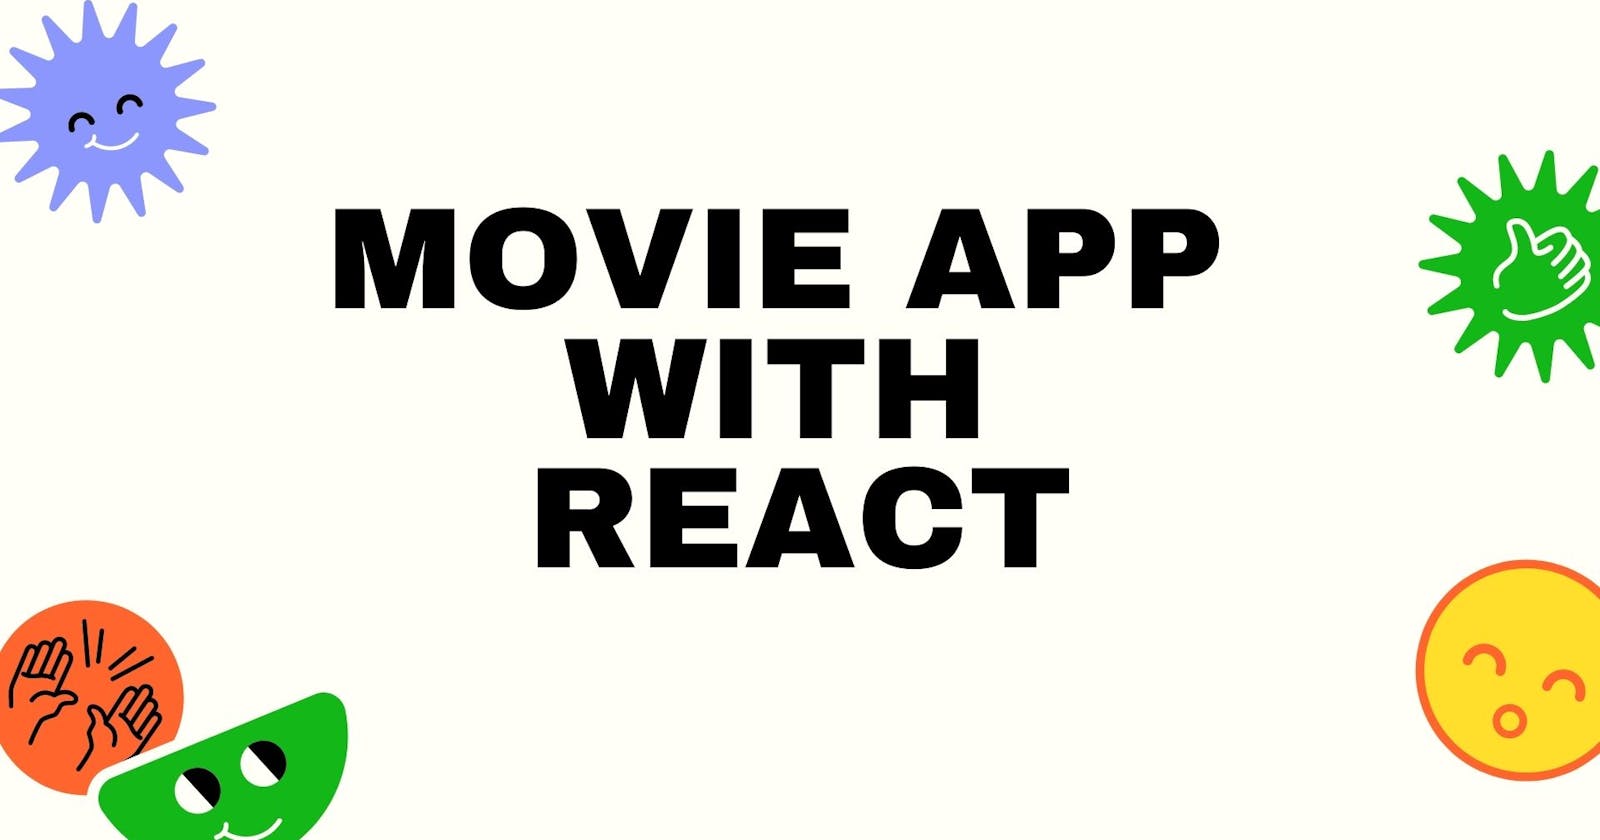 Movie App with React